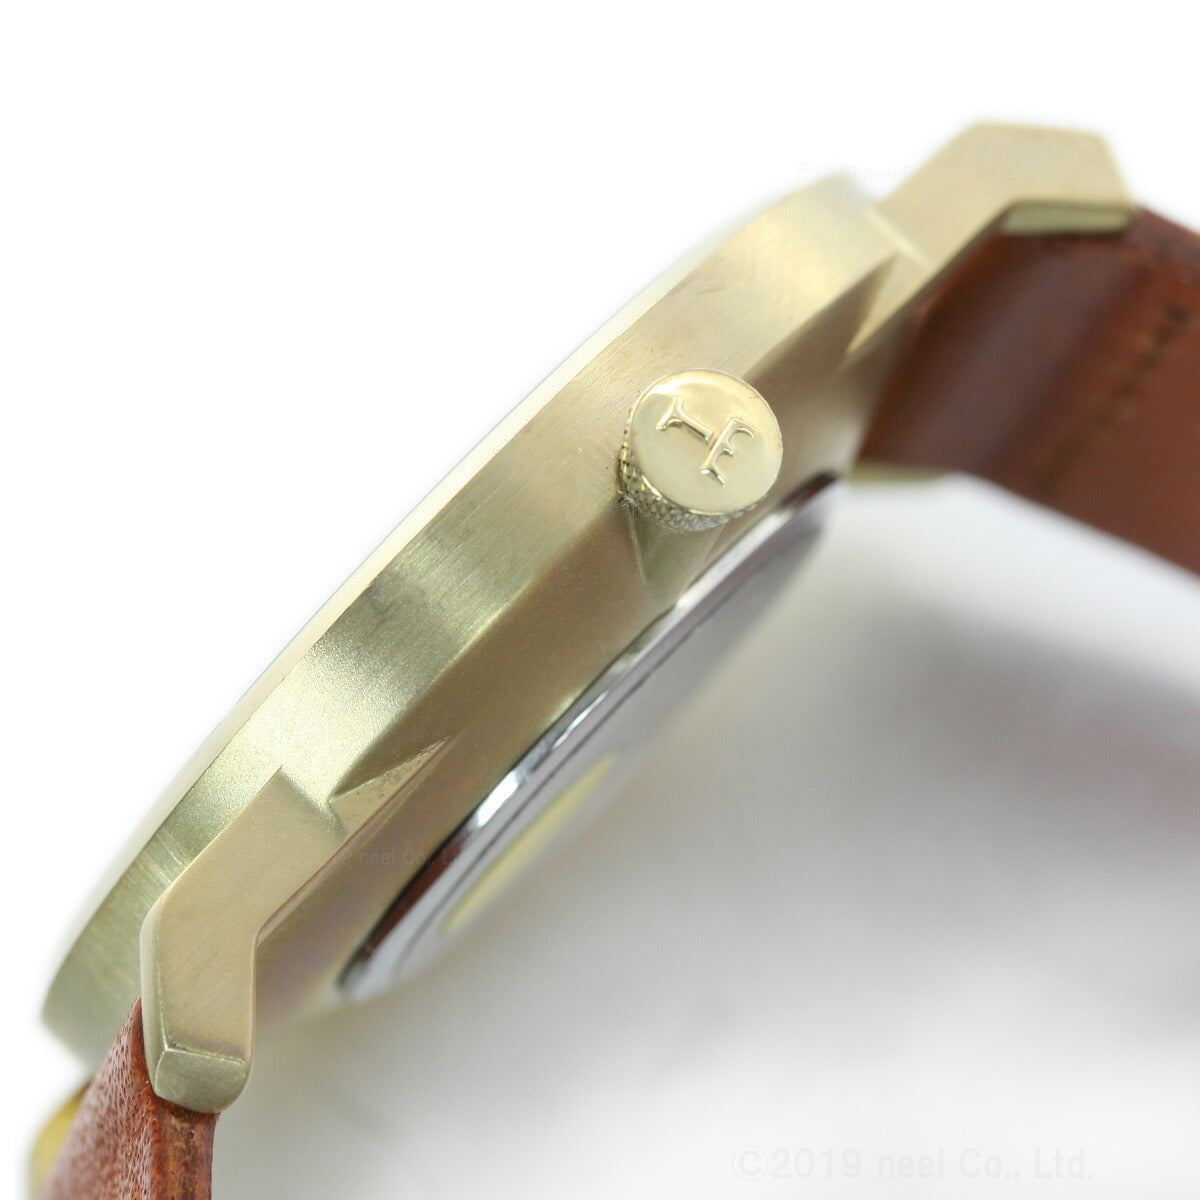 トリワ TRIWA 腕時計 メンズ レディース ロック ファルケン LOCH FALKEN FAST104-CL010217